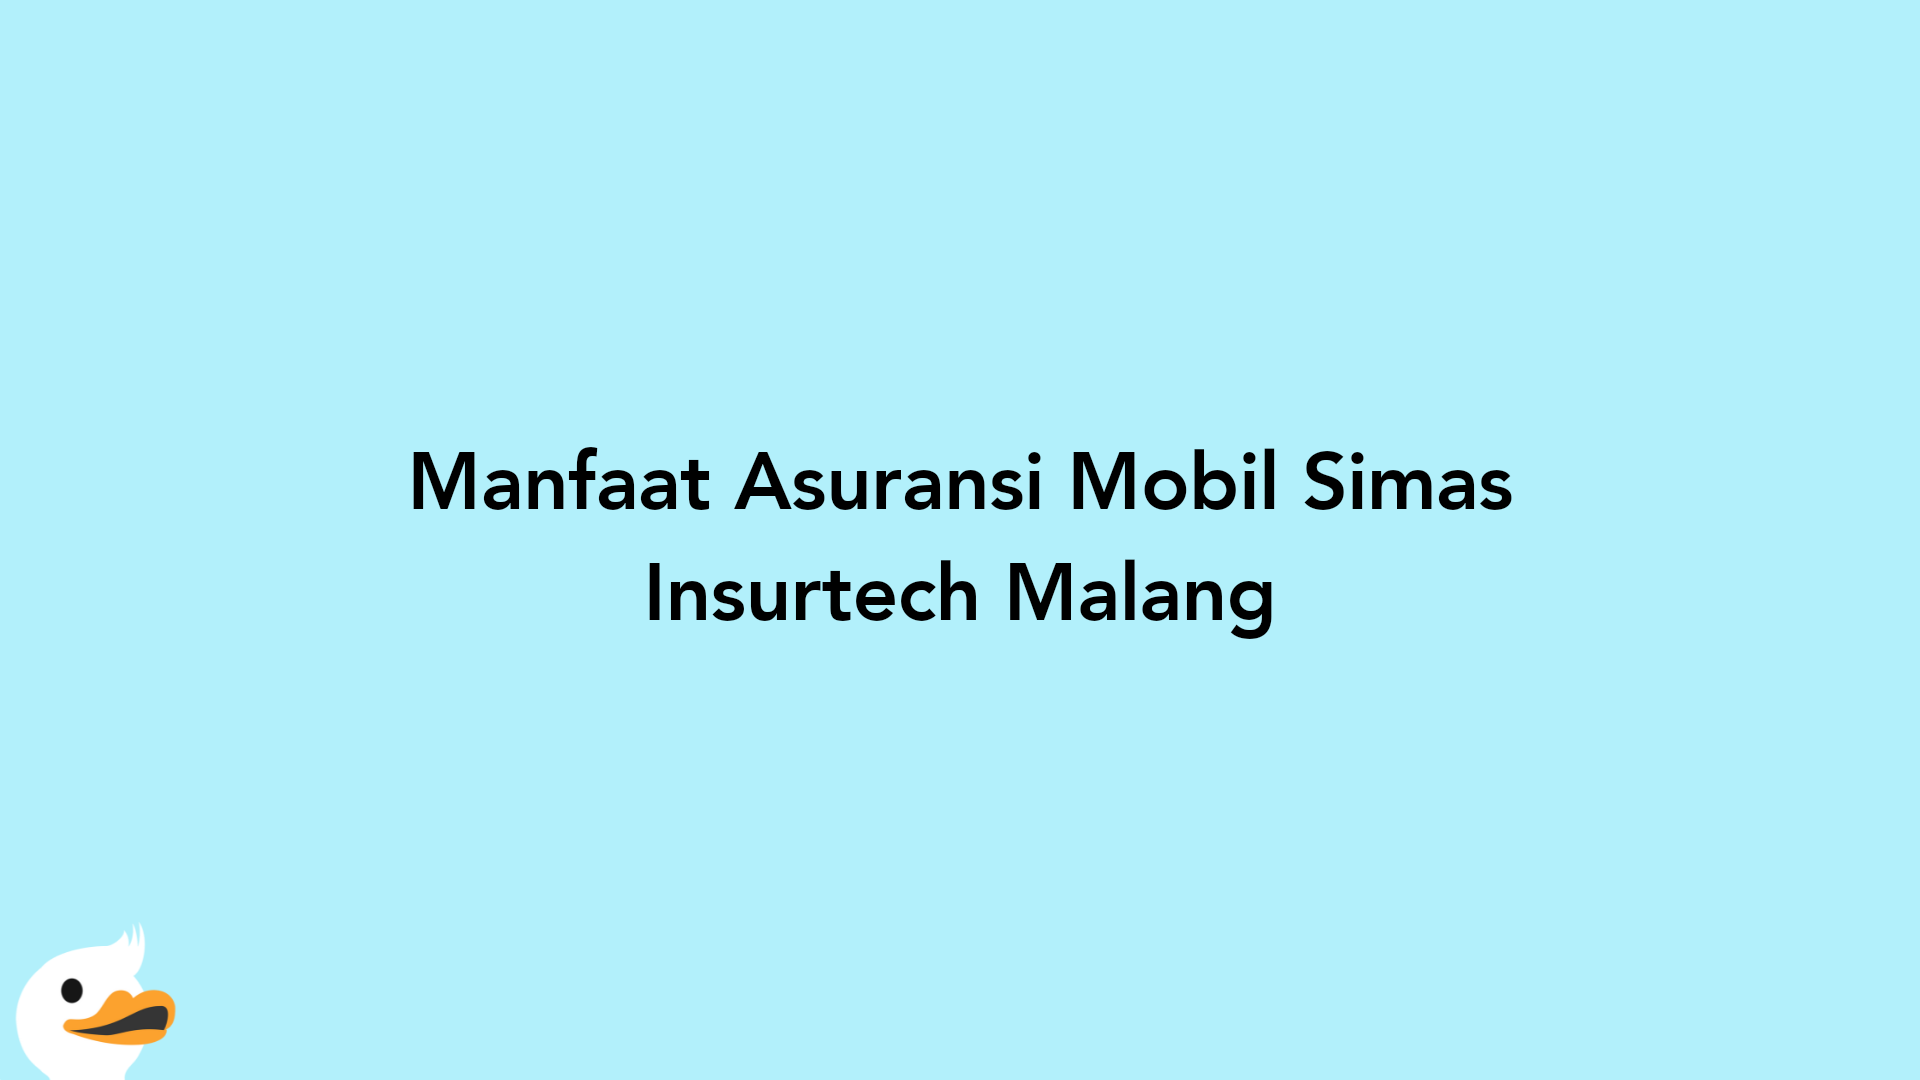 Manfaat Asuransi Mobil Simas Insurtech Malang